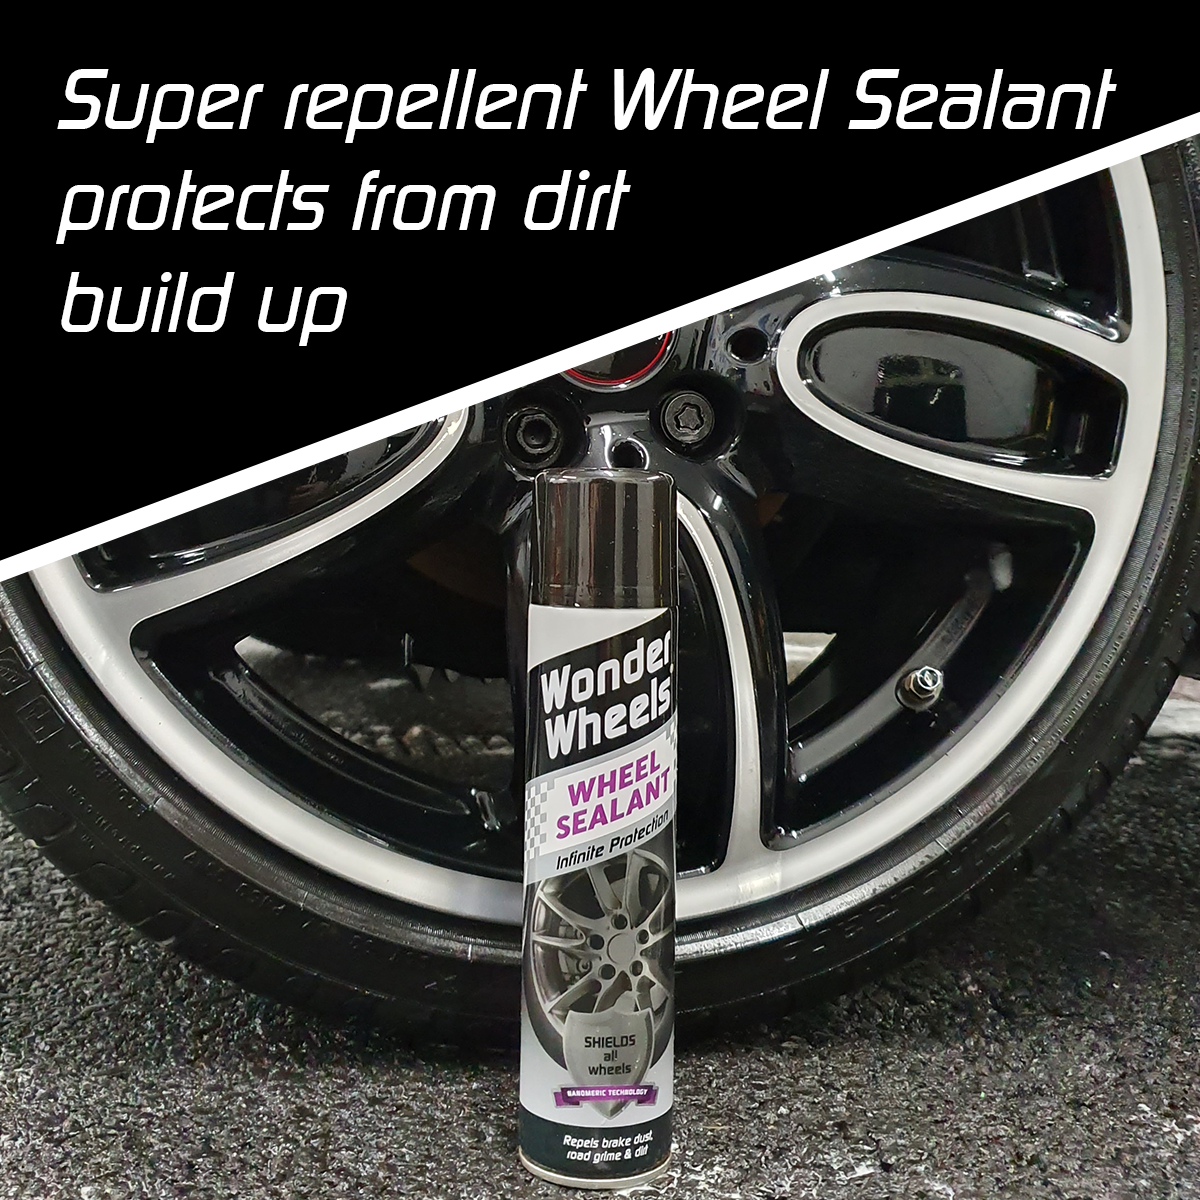 Super repellent wheel sealant prevents dirt build up